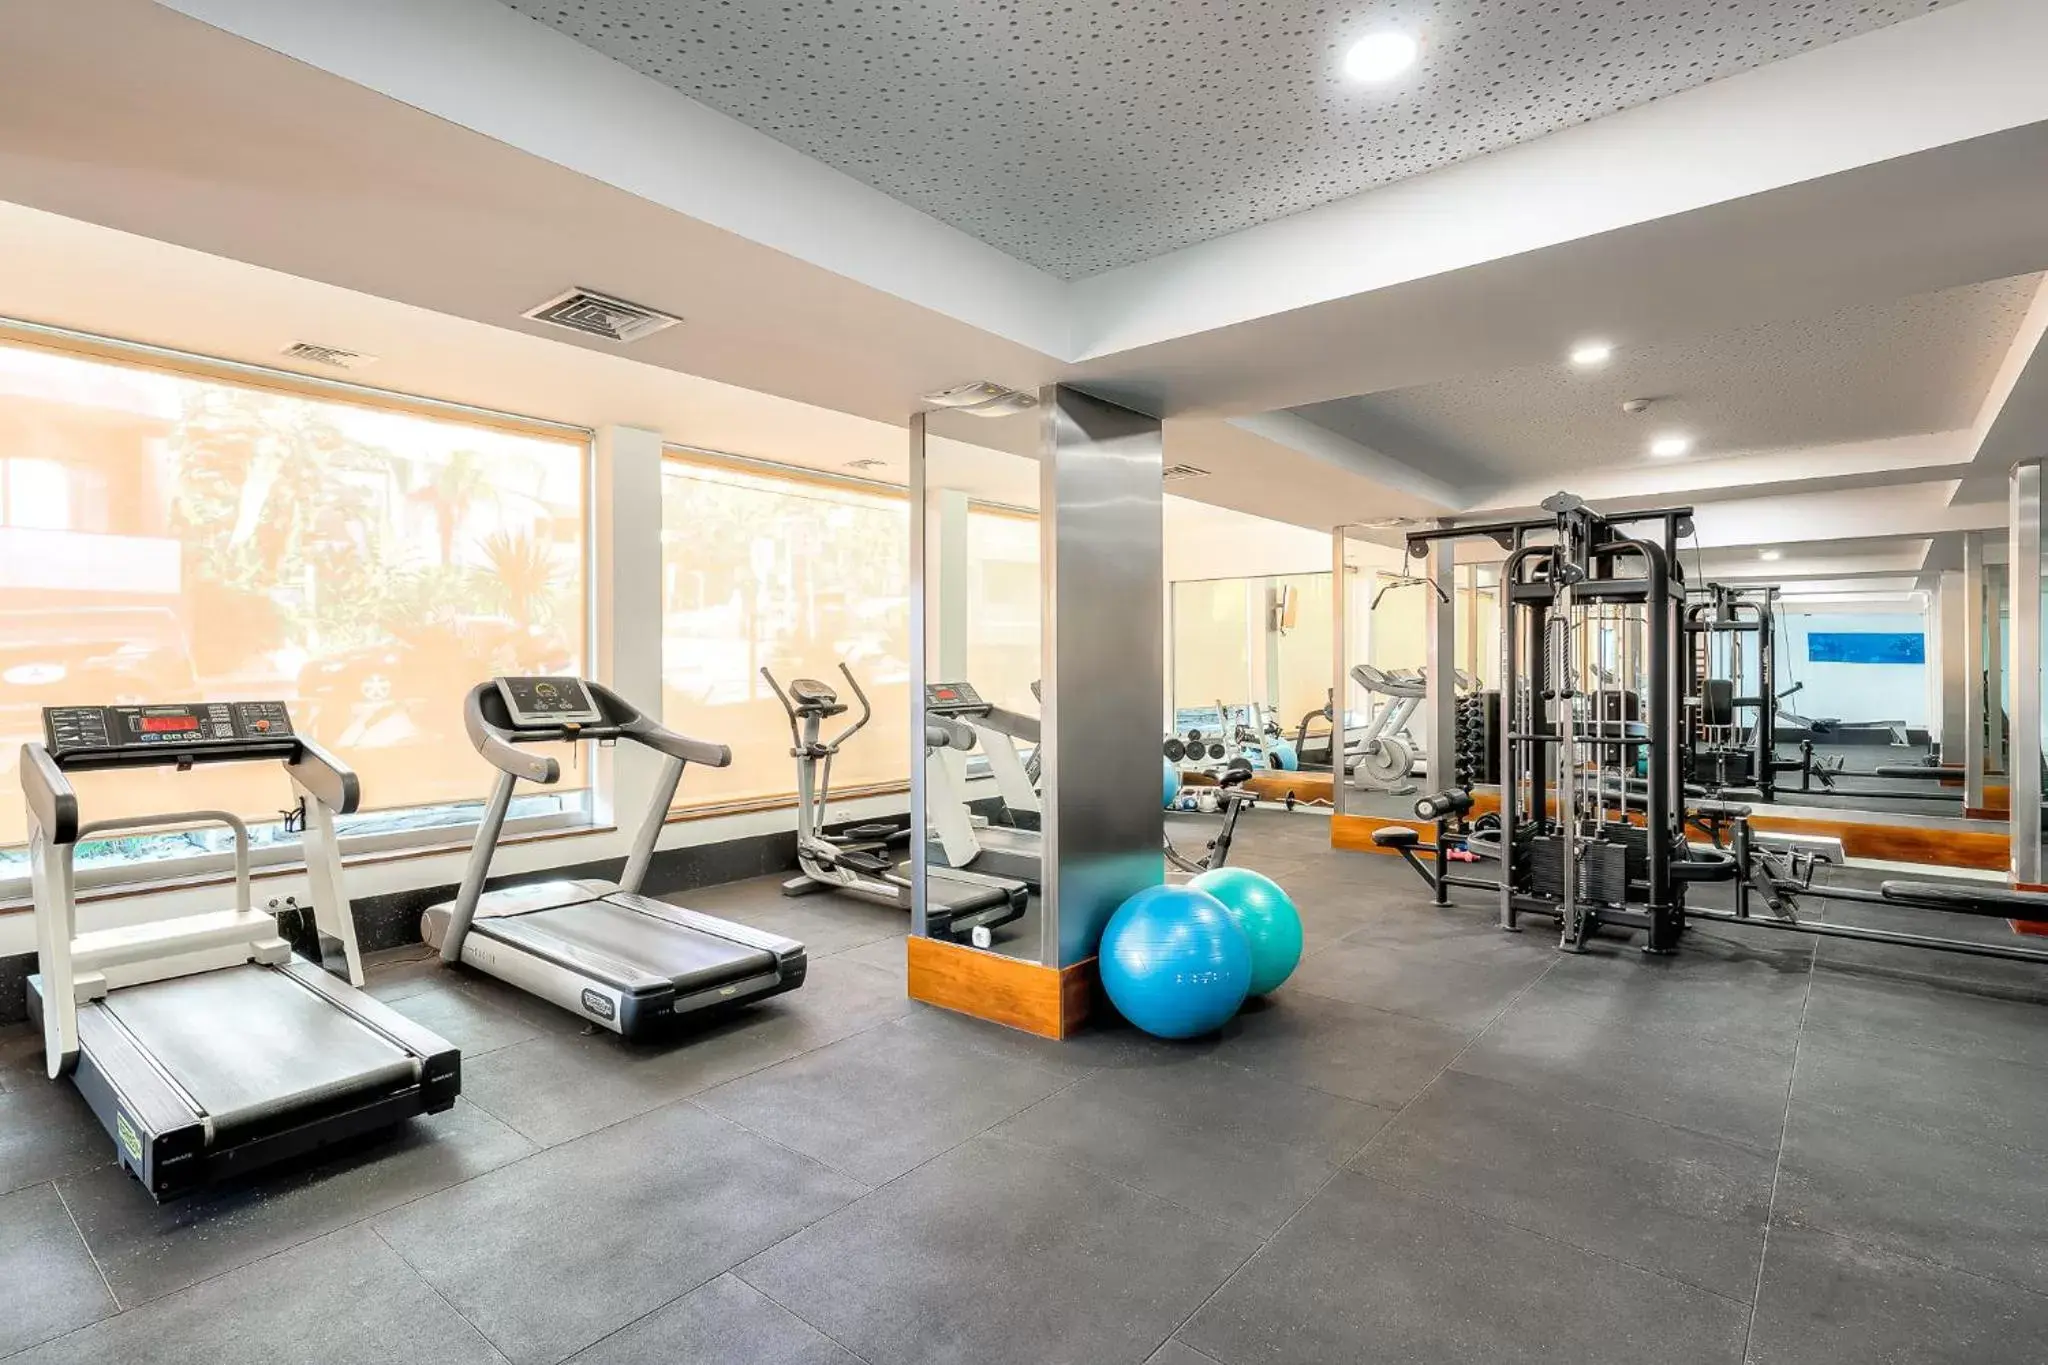 Fitness centre/facilities, Fitness Center/Facilities in Jupiter Algarve Hotel